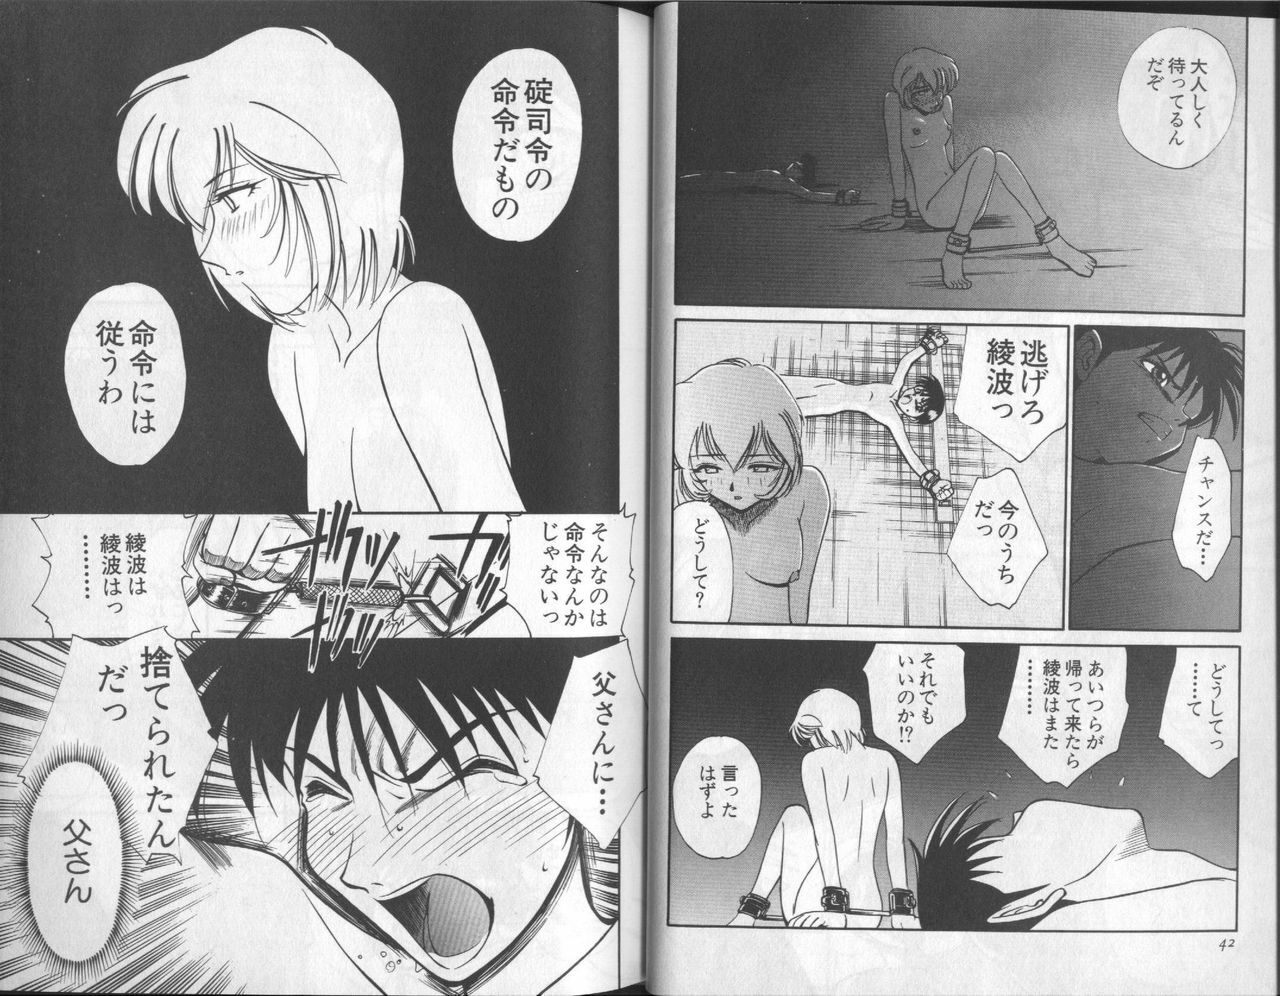 [Anthology] Shitsurakuen 6 | Paradise Lost 6 (Neon Genesis Evangelion) page 23 full